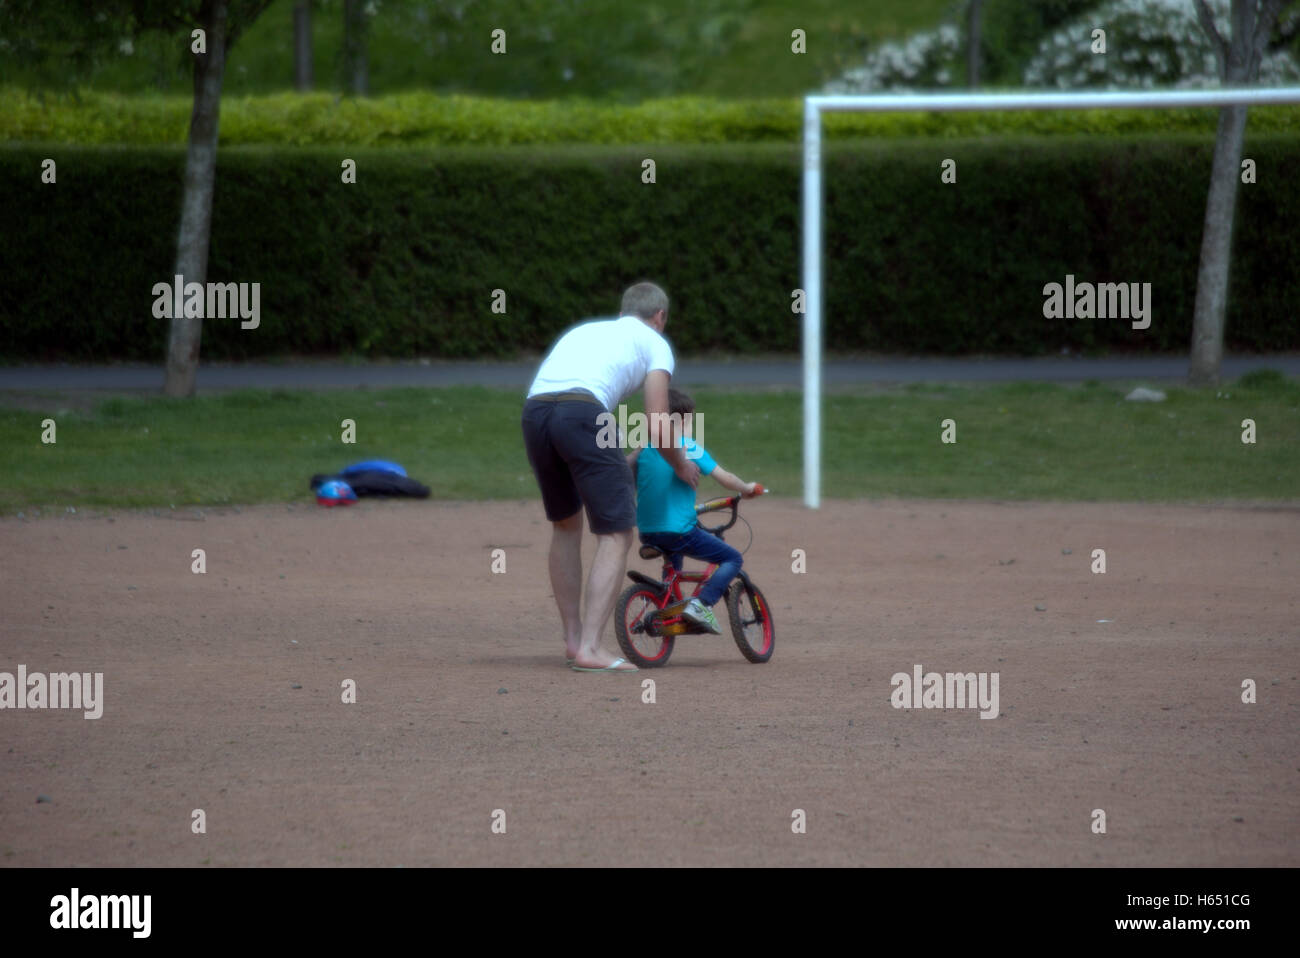 Padre enseña al hijo a correr en bicicleta con el objetivo claramente delante de él Foto de stock